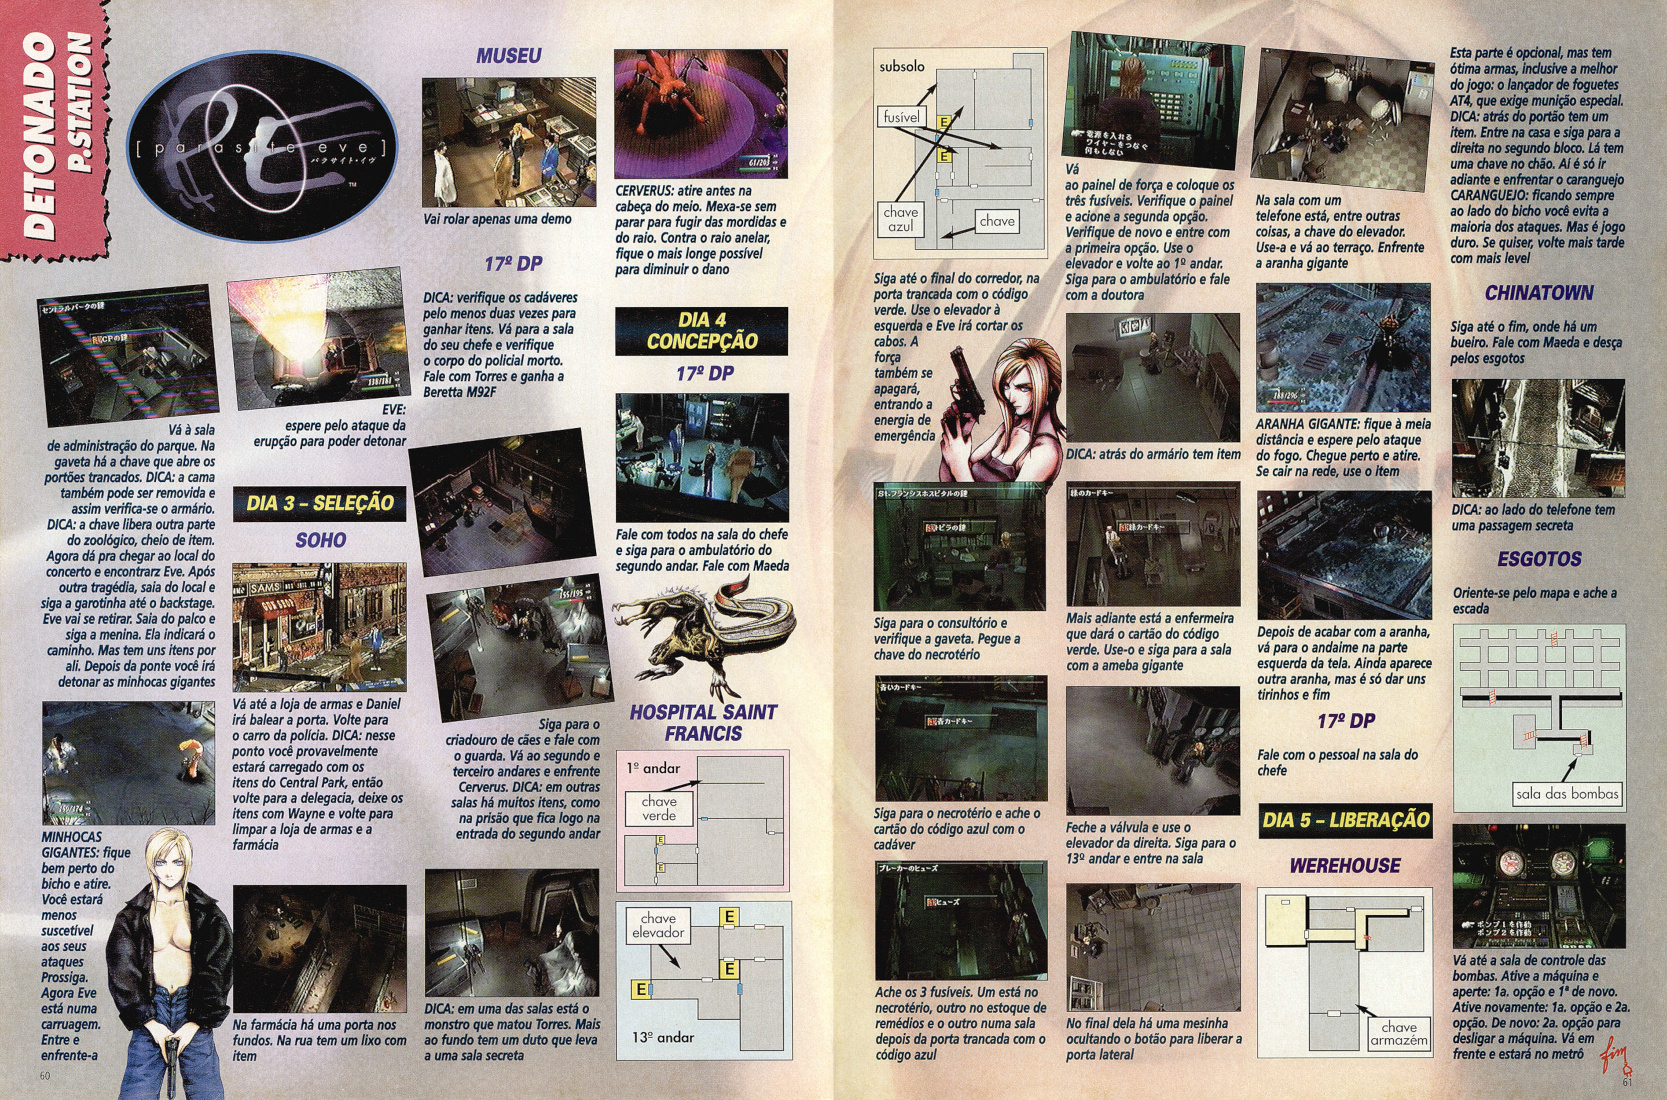 Revista Super Dicas Playstation Nº 6 Detonado Parasite Eve 2